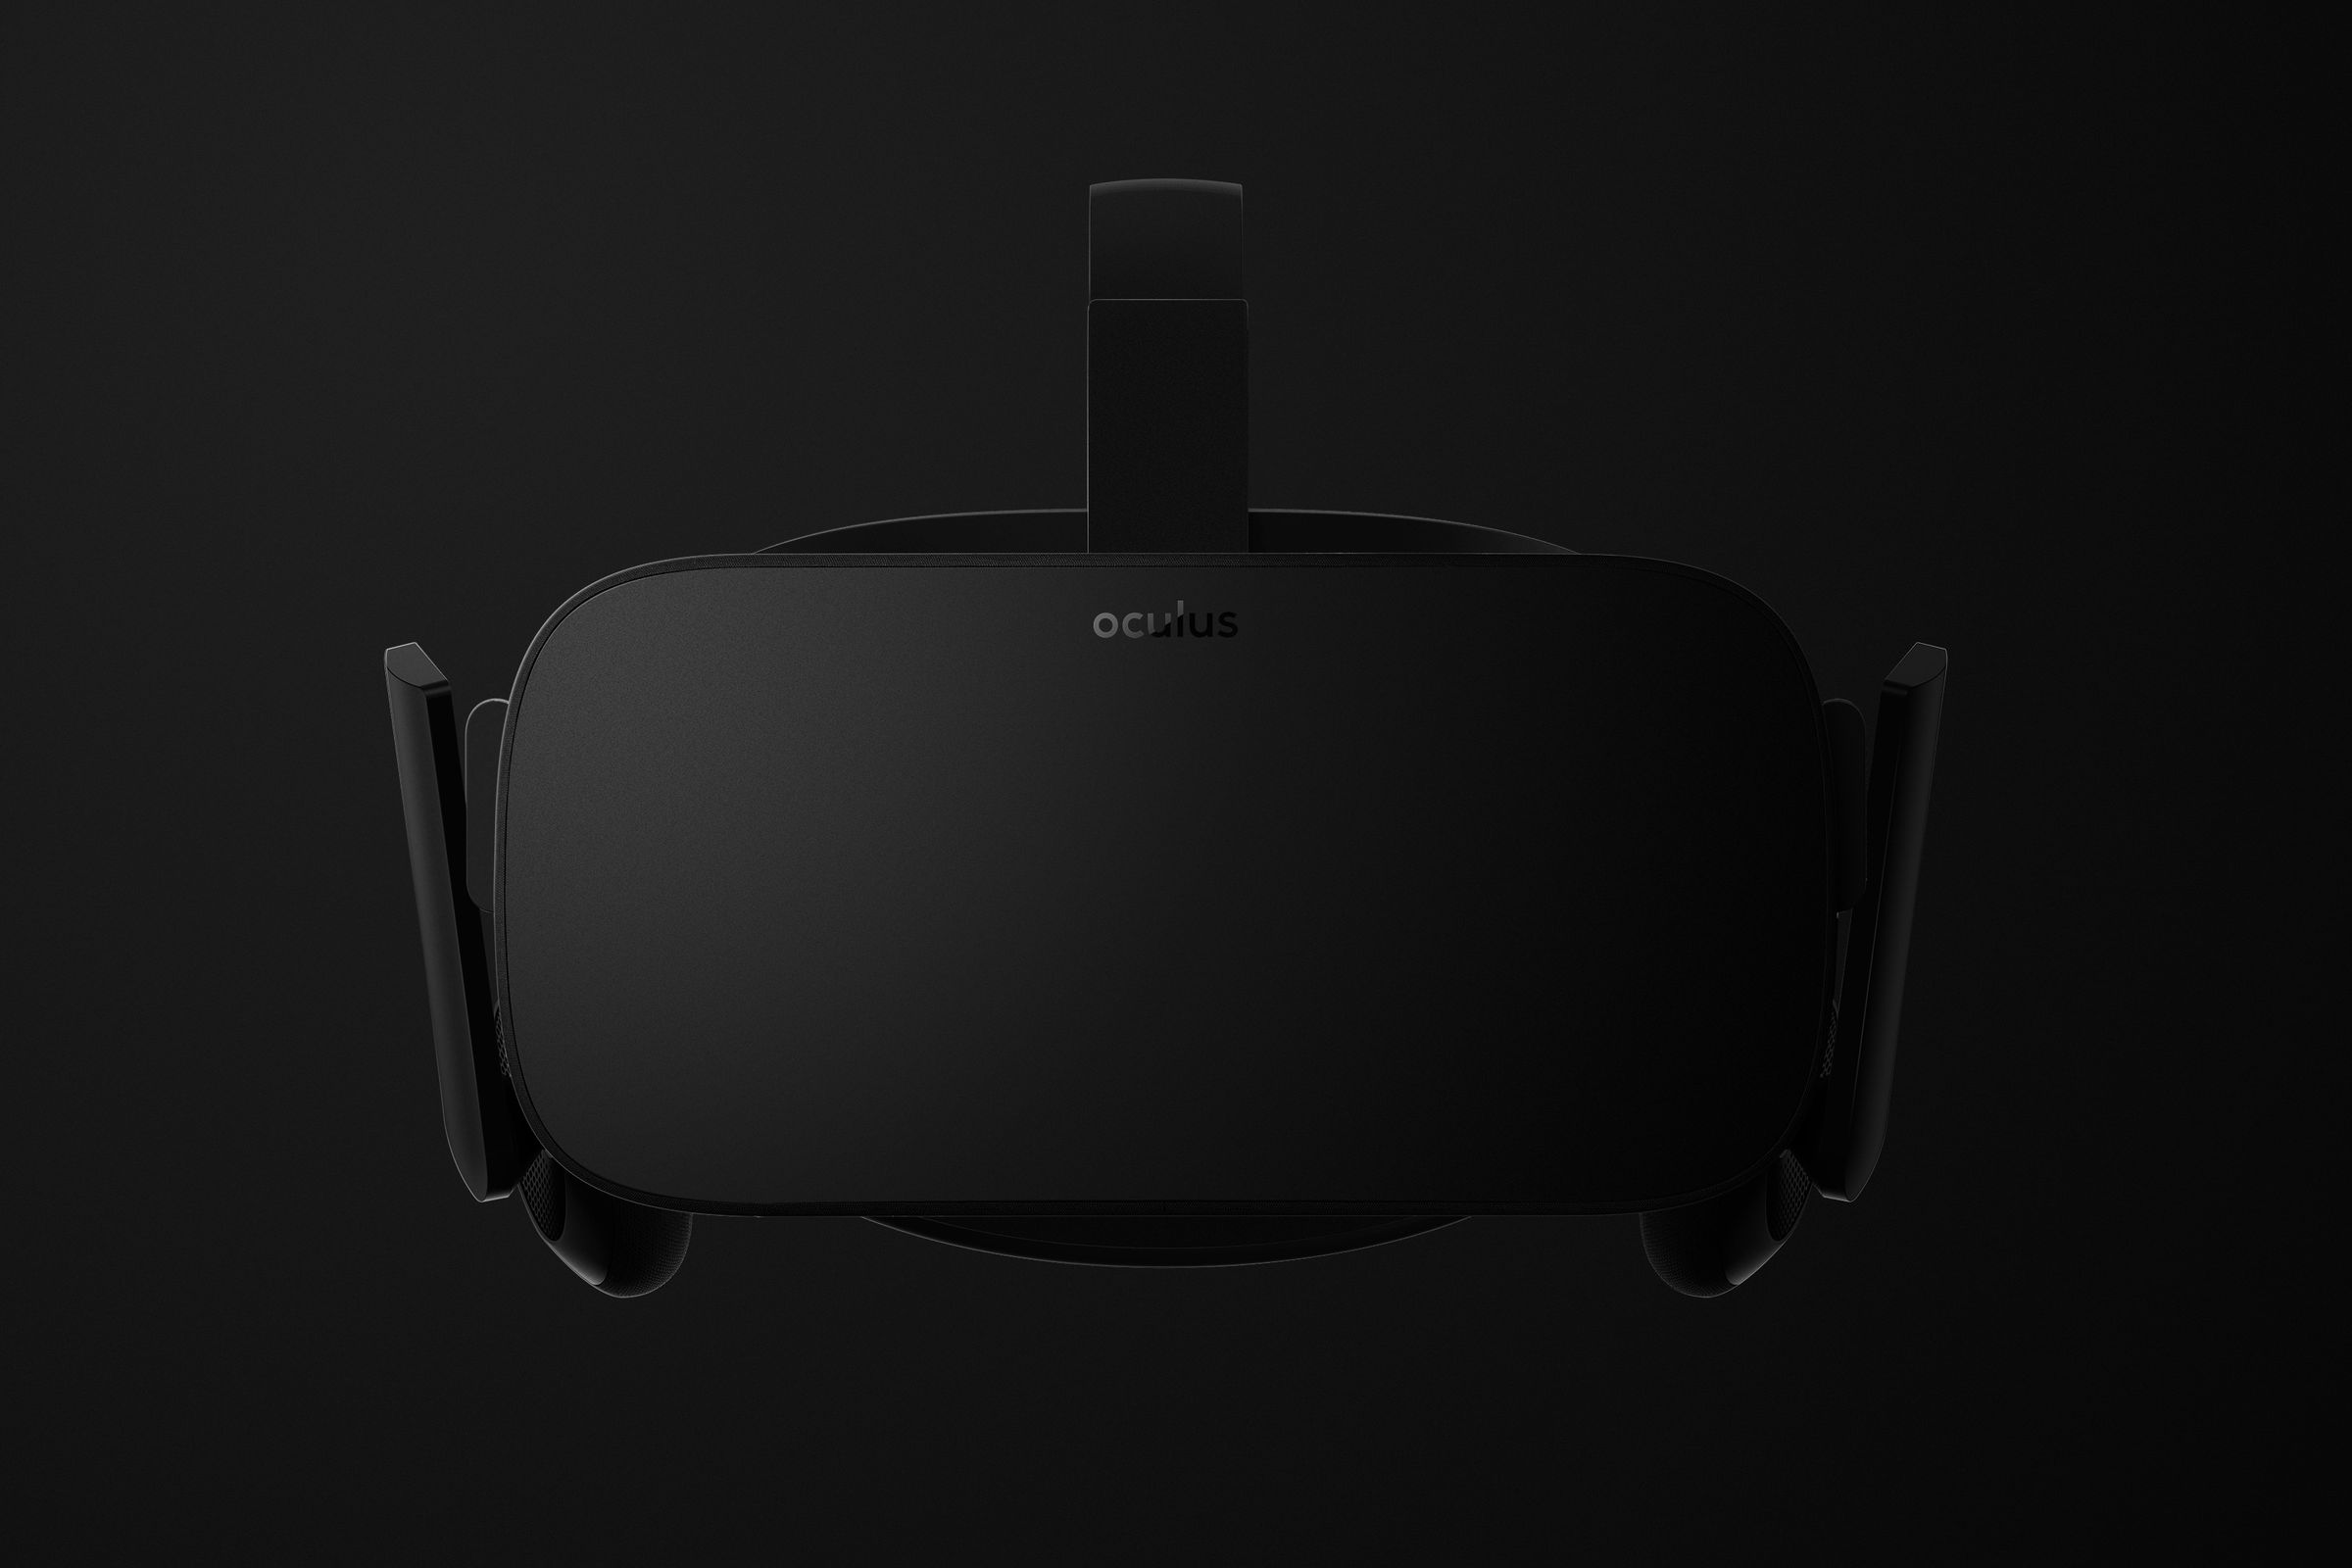 Oculus Rift Consumer Edition